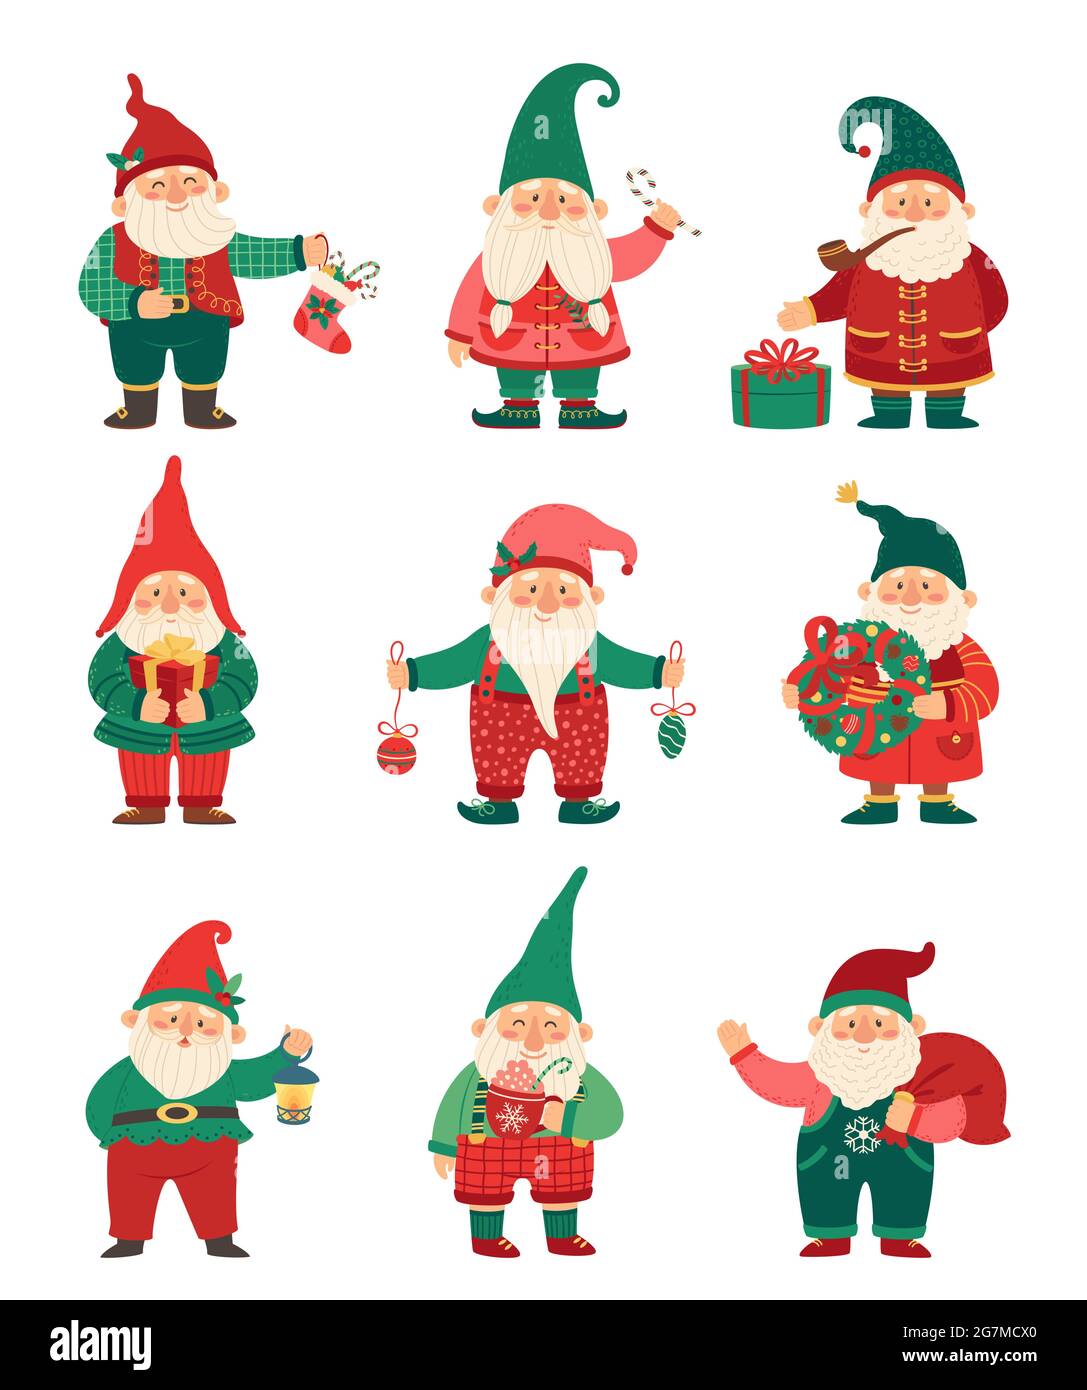 Gnomi di Natale. Carino nani elfi con elementi di vacanza invernali regali, calze, bacche agili. Serie vettoriale di caratteri gnome xmas a fumetto piatto. Personaggi da favola magici con regali e caramelle Illustrazione Vettoriale